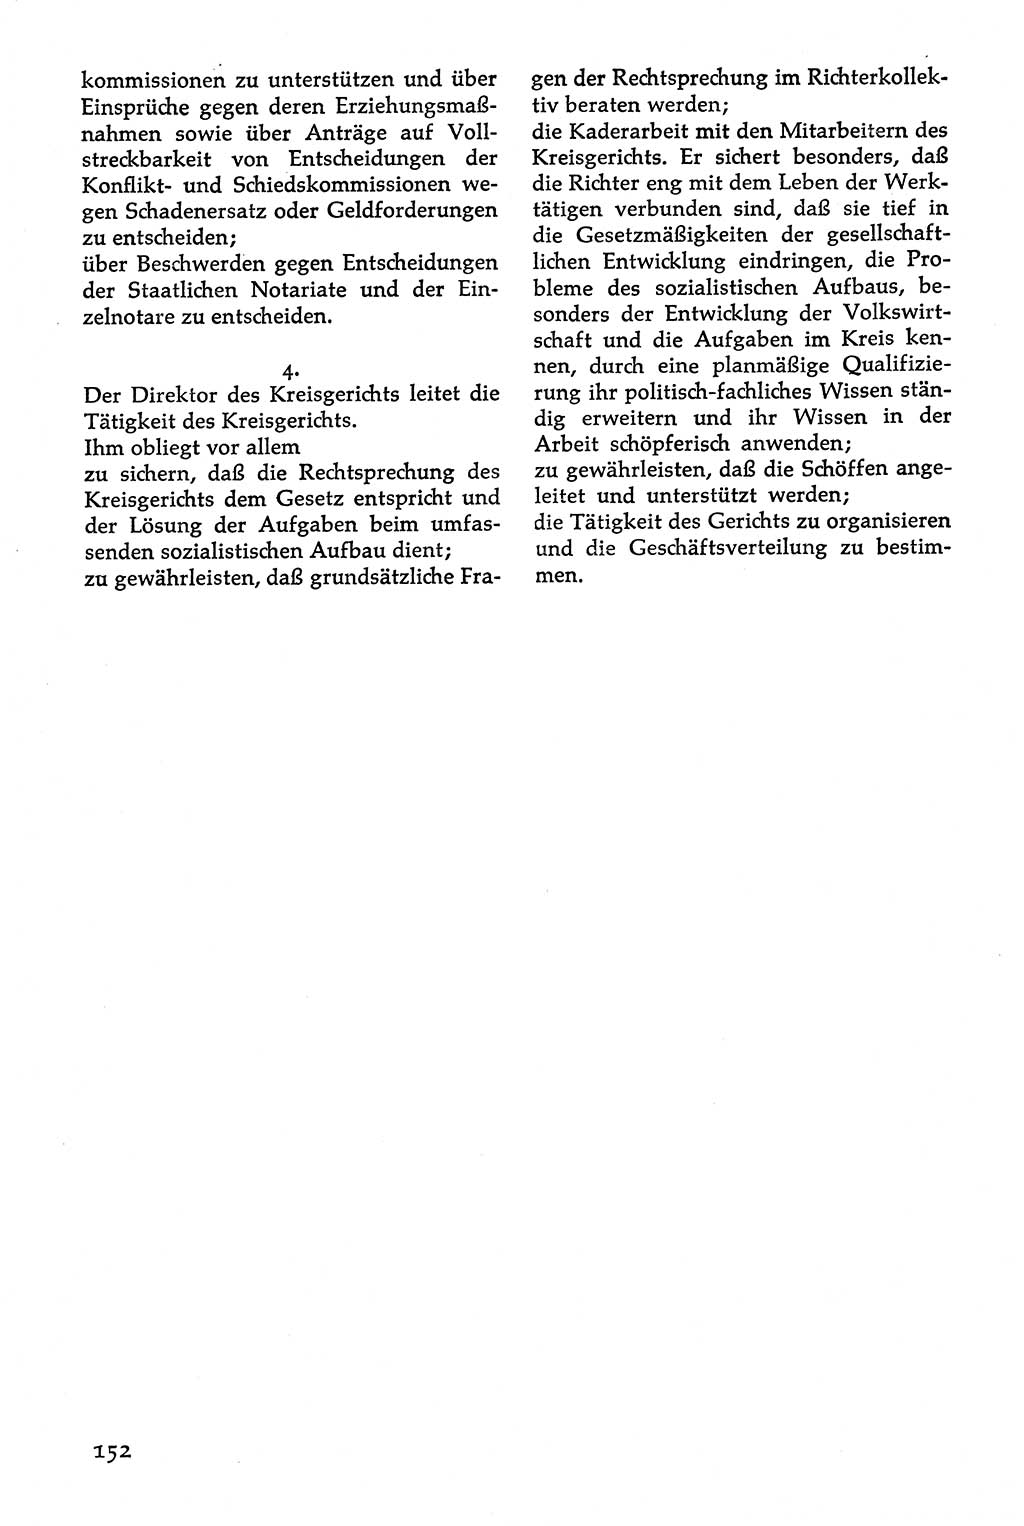 Volksdemokratische Ordnung in Mitteldeutschland [Deutsche Demokratische Republik (DDR)], Texte zur verfassungsrechtlichen Situation 1963, Seite 152 (Volksdem. Ordn. Md. DDR 1963, S. 152)